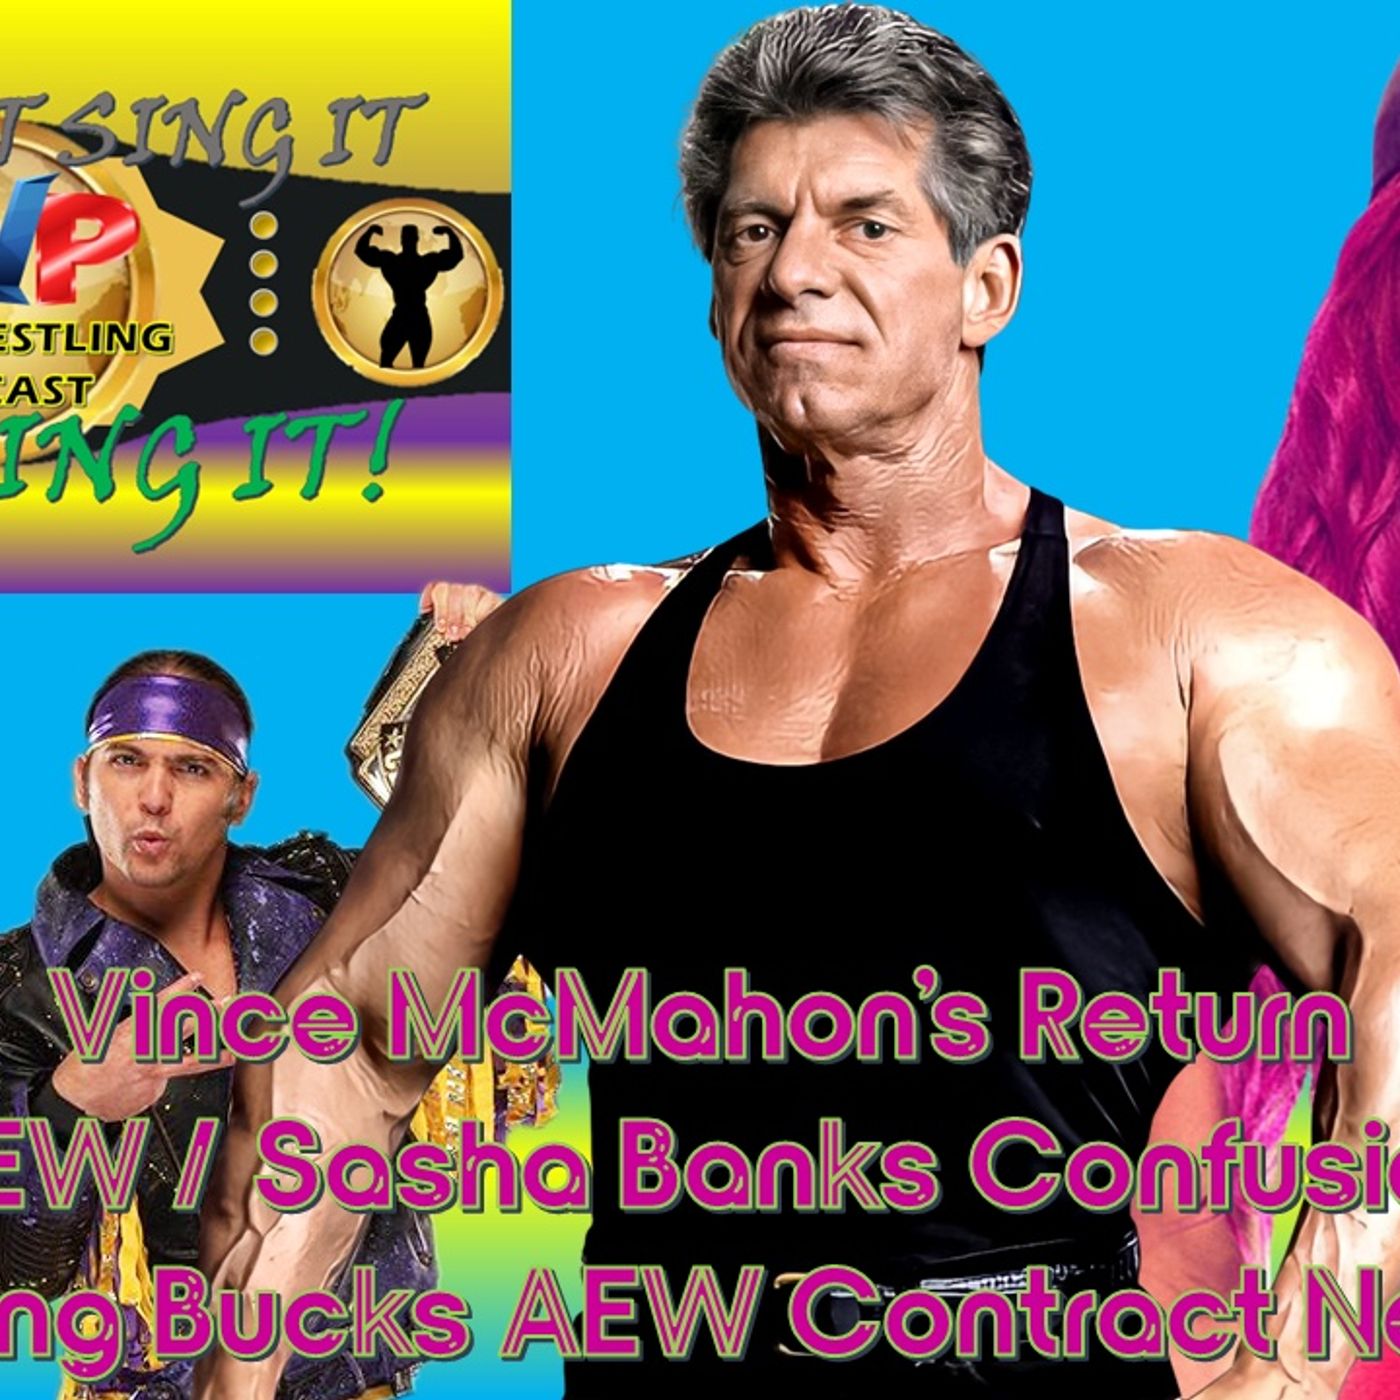 Vince McMahon is Back - Sasha Banks Confusion - Young Bucks Contract News